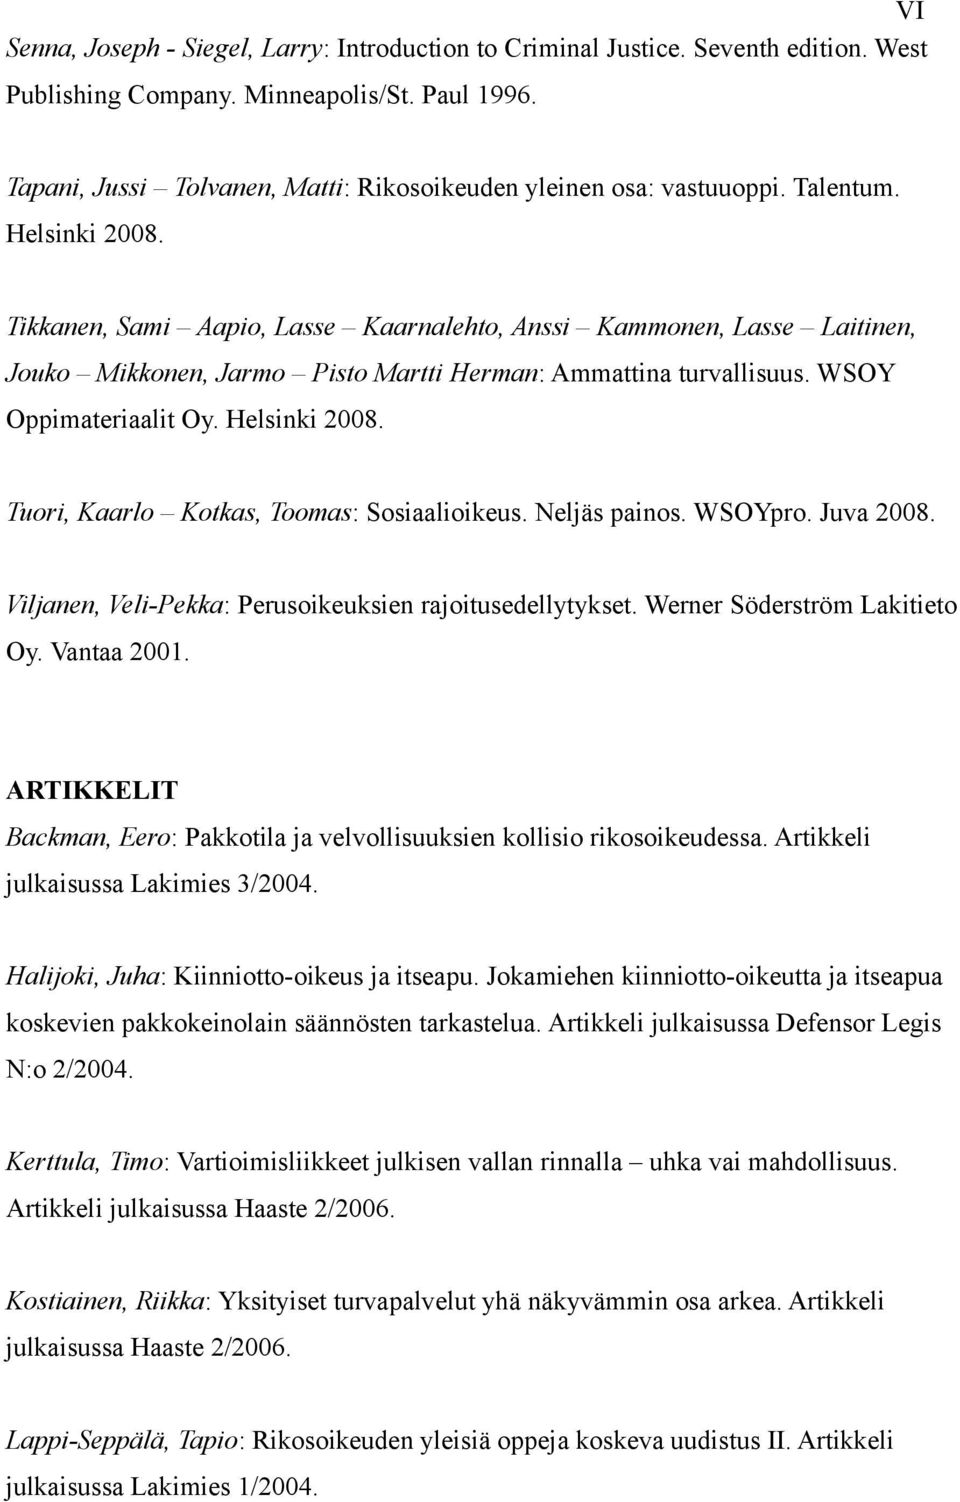 Tikkanen, Sami Aapio, Lasse Kaarnalehto, Anssi Kammonen, Lasse Laitinen, Jouko Mikkonen, Jarmo Pisto Martti Herman: Ammattina turvallisuus. WSOY Oppimateriaalit Oy. Helsinki 2008.